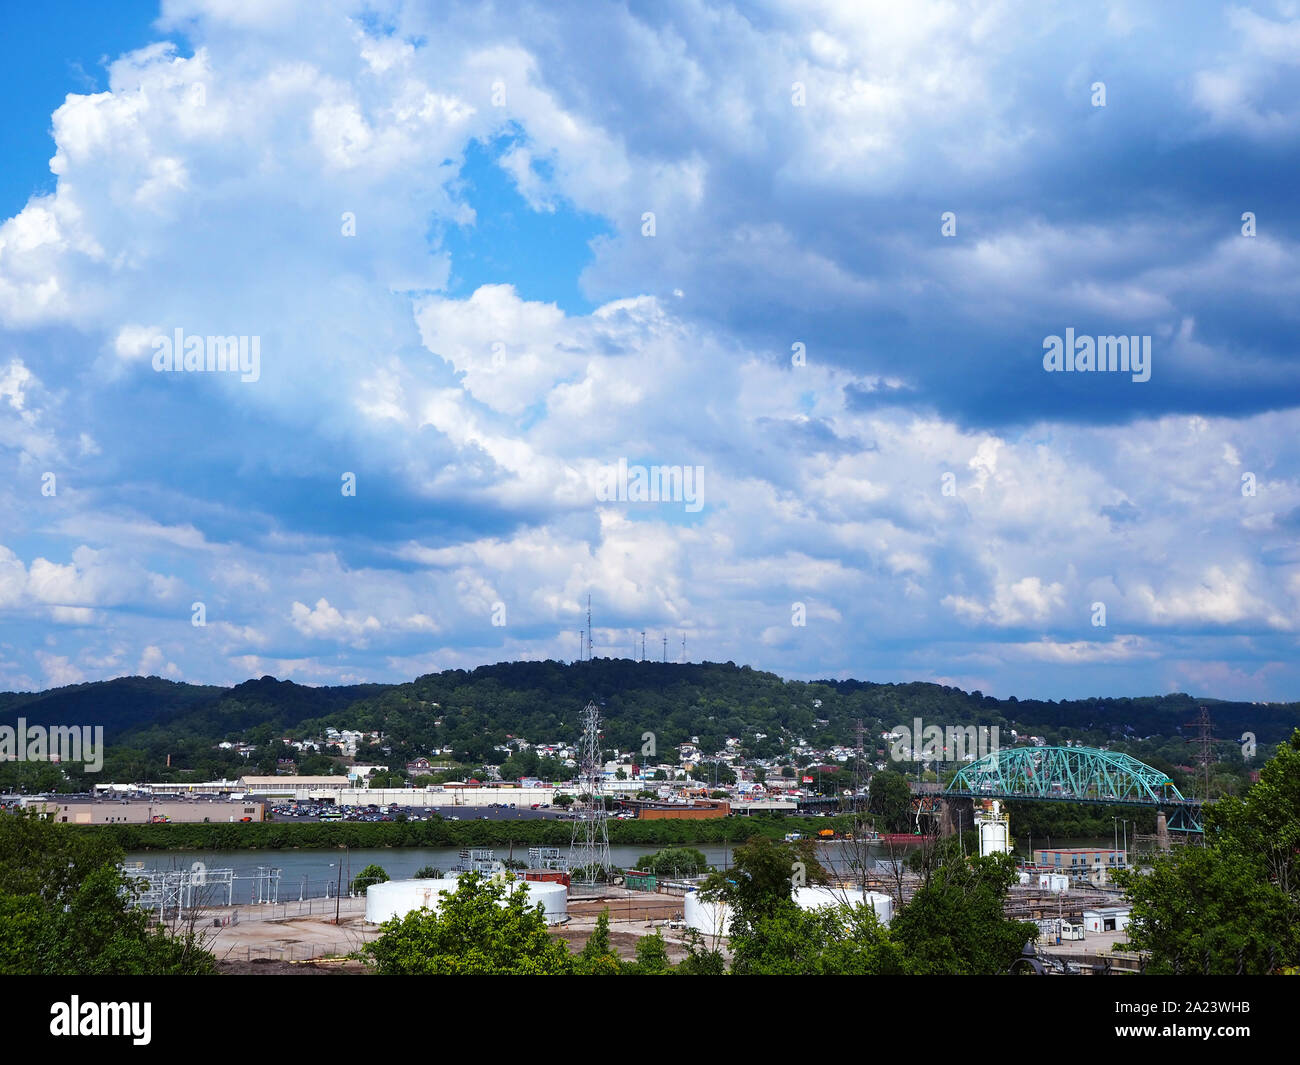 CHARLESTON, WEST VIRGINIA - Juillet 26, 2019 : la Kanawha River qui traverse le milieu de Charleston, West Virginia, dans la montagnes des Appalaches. Banque D'Images